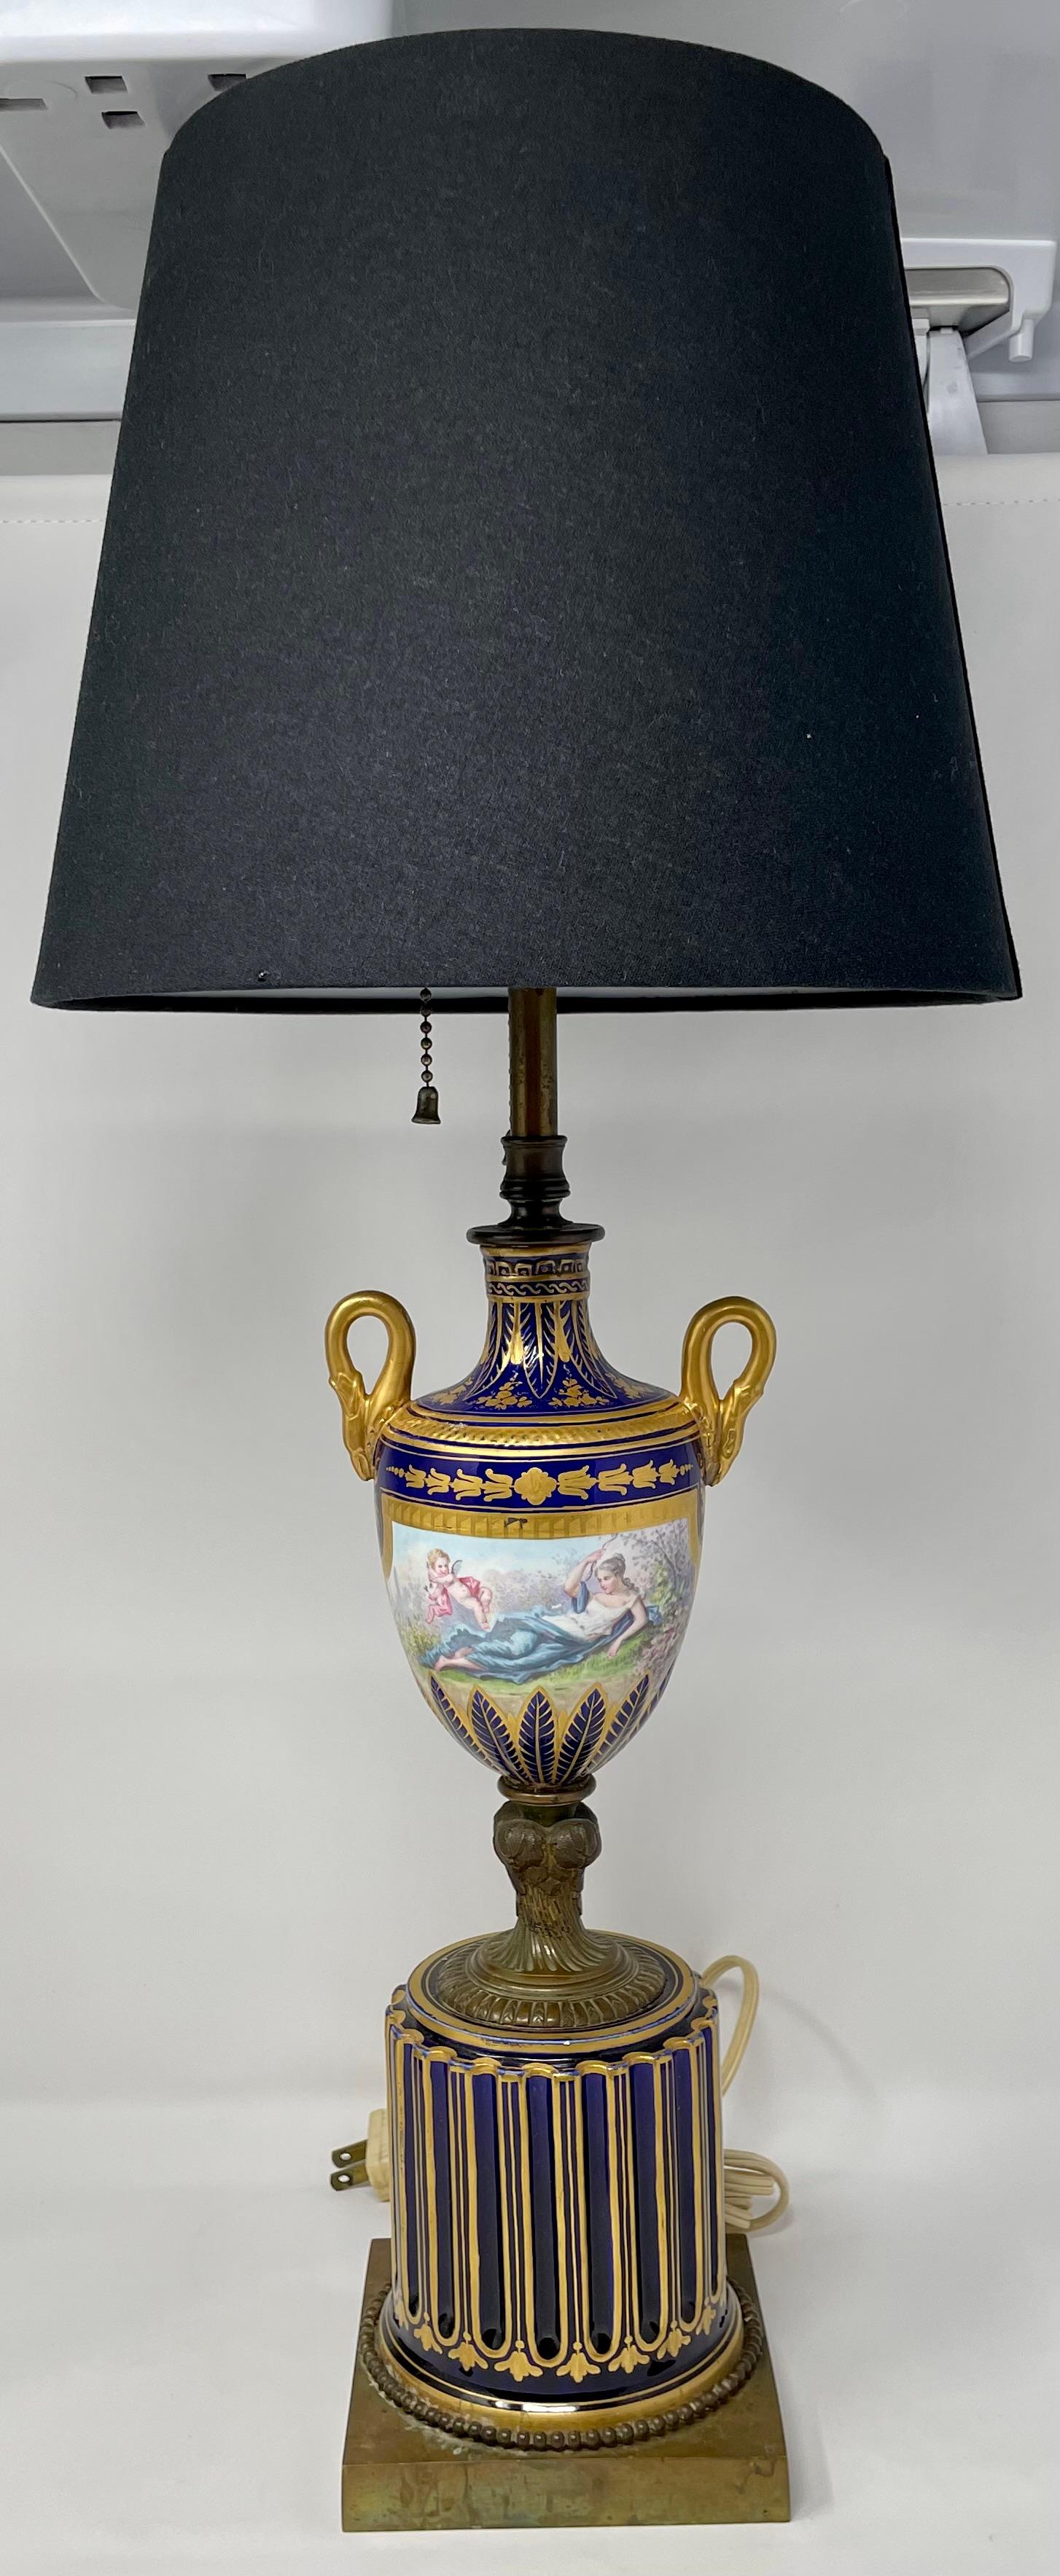 Paire d'anciennes lampes en porcelaine bleu cobalt et or de la fin du 19e siècle.
Abat-jour : 10